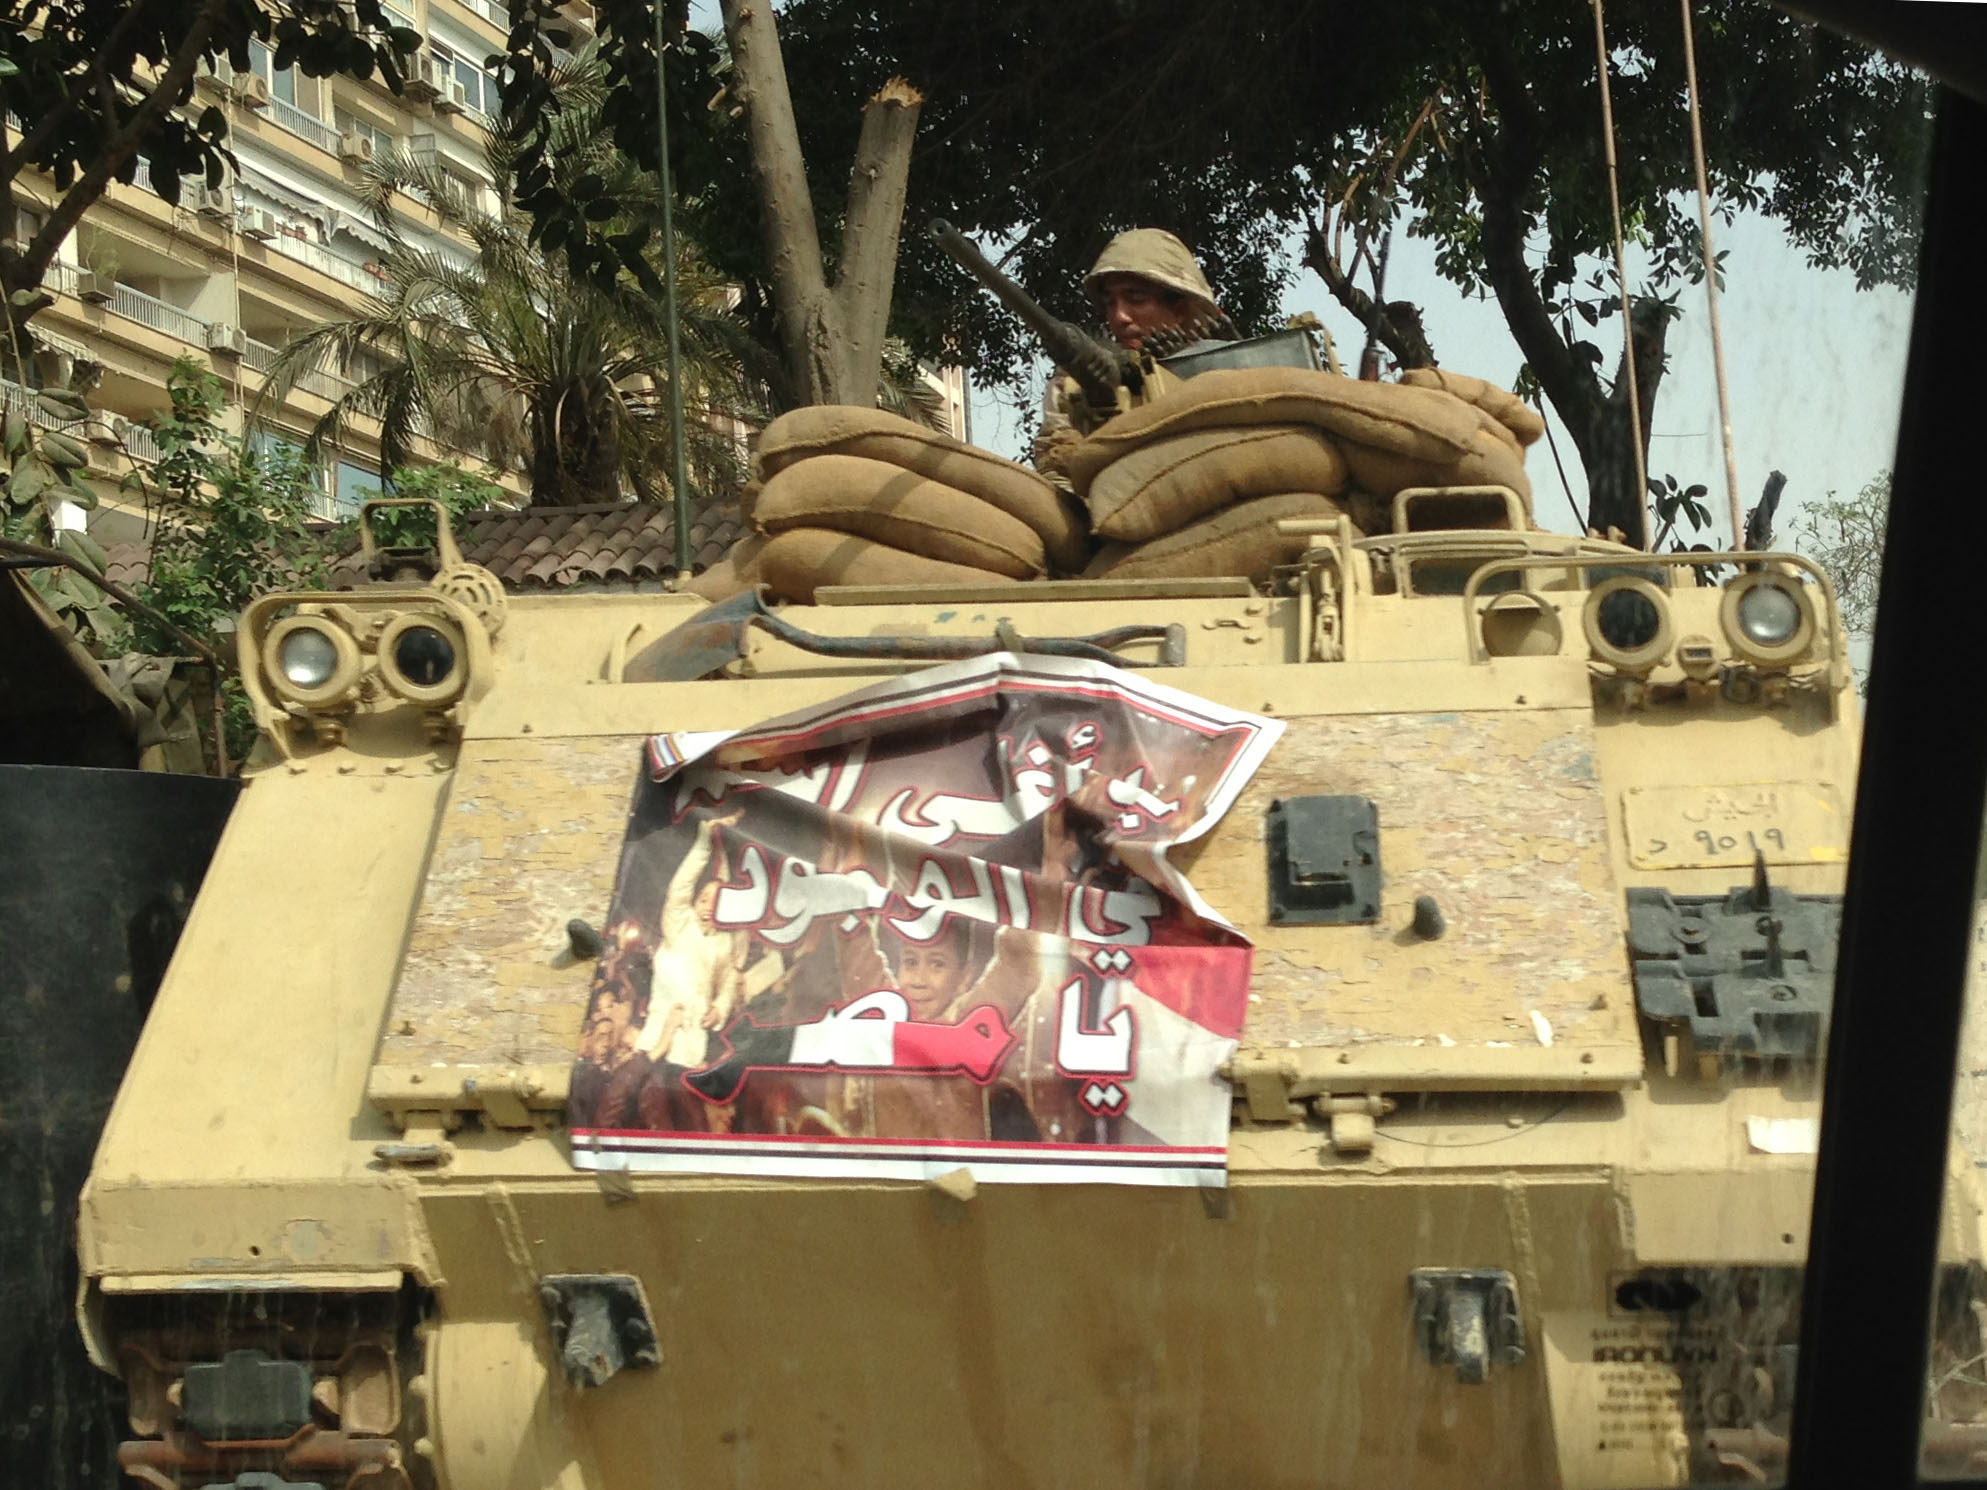 Propaganda poster on tank at military check point, El Maadi/Corniche, Cairo 2014